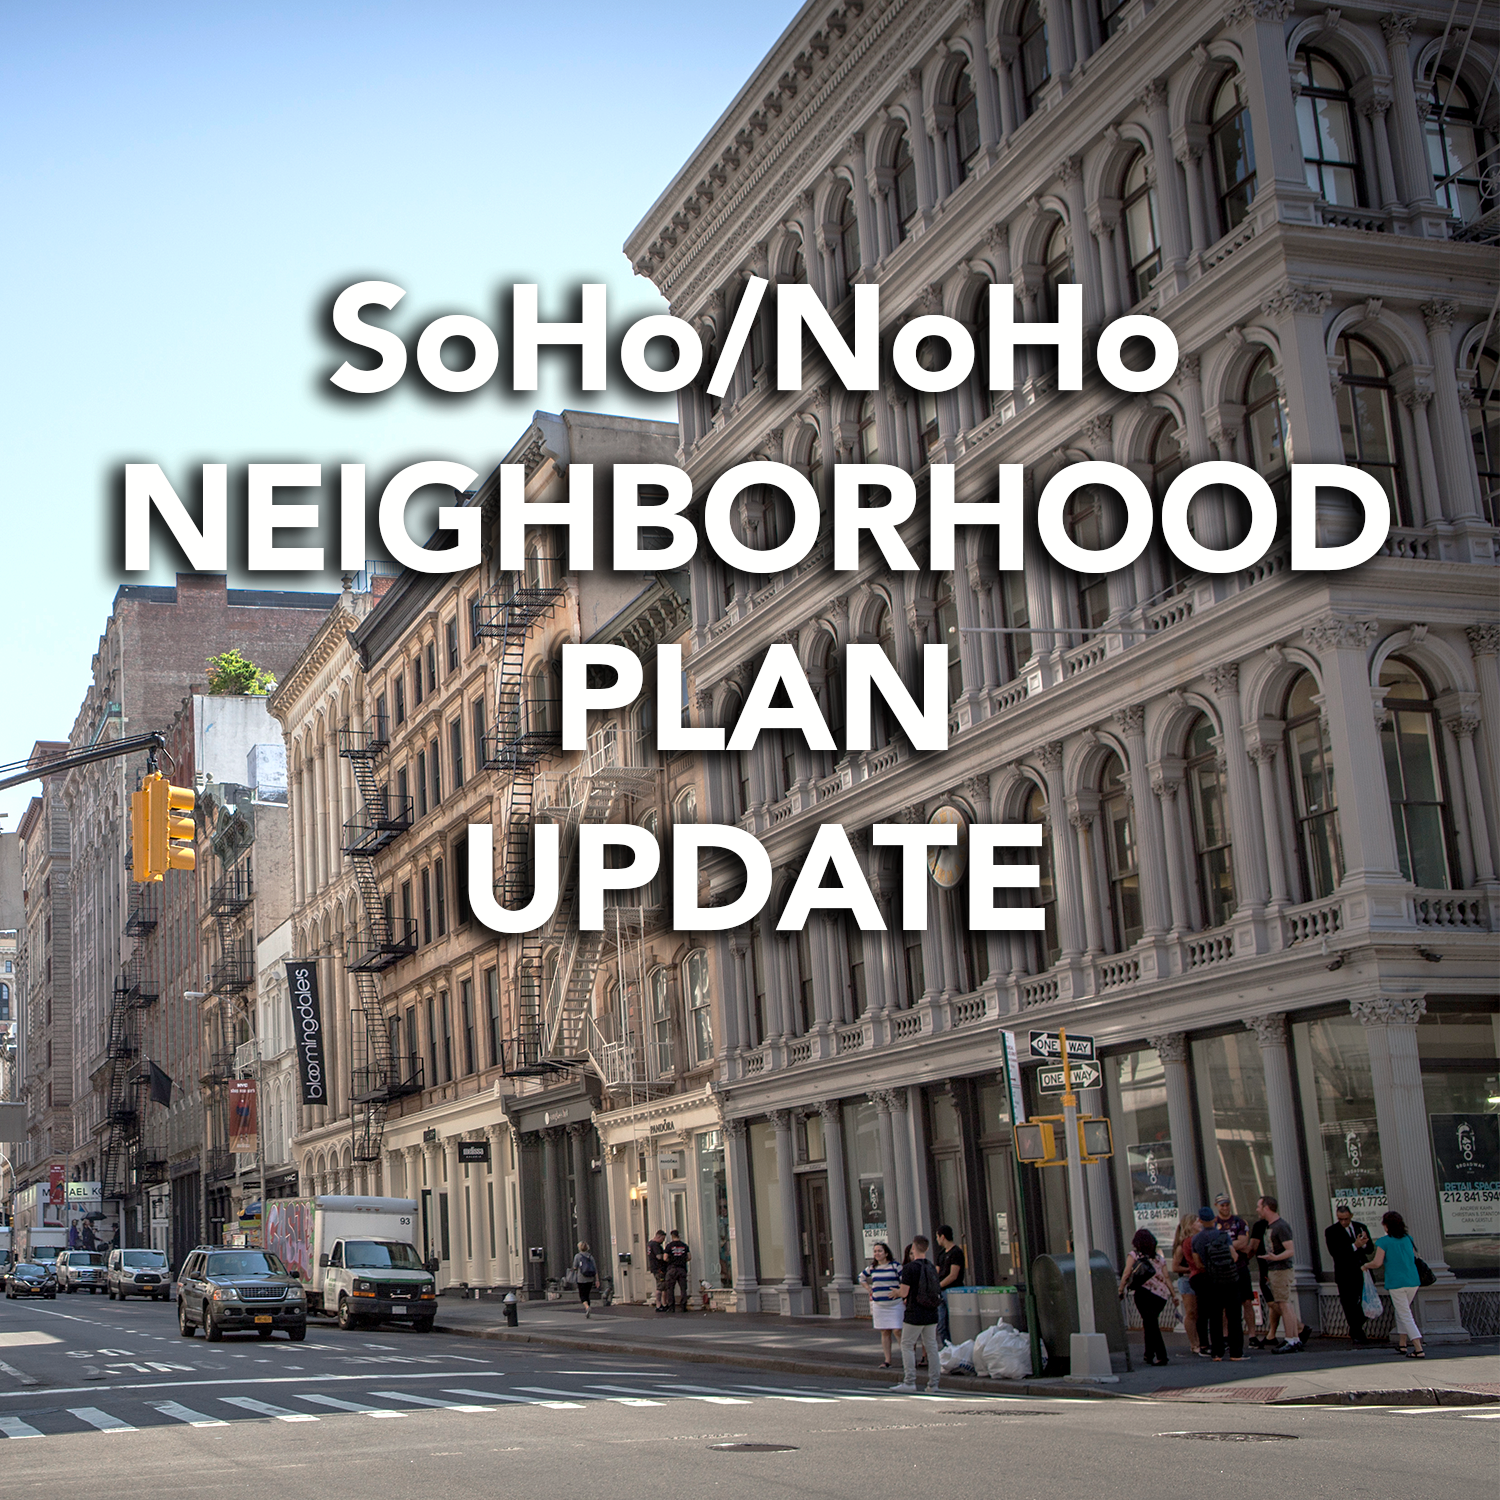 soho noho neighborhood plan update